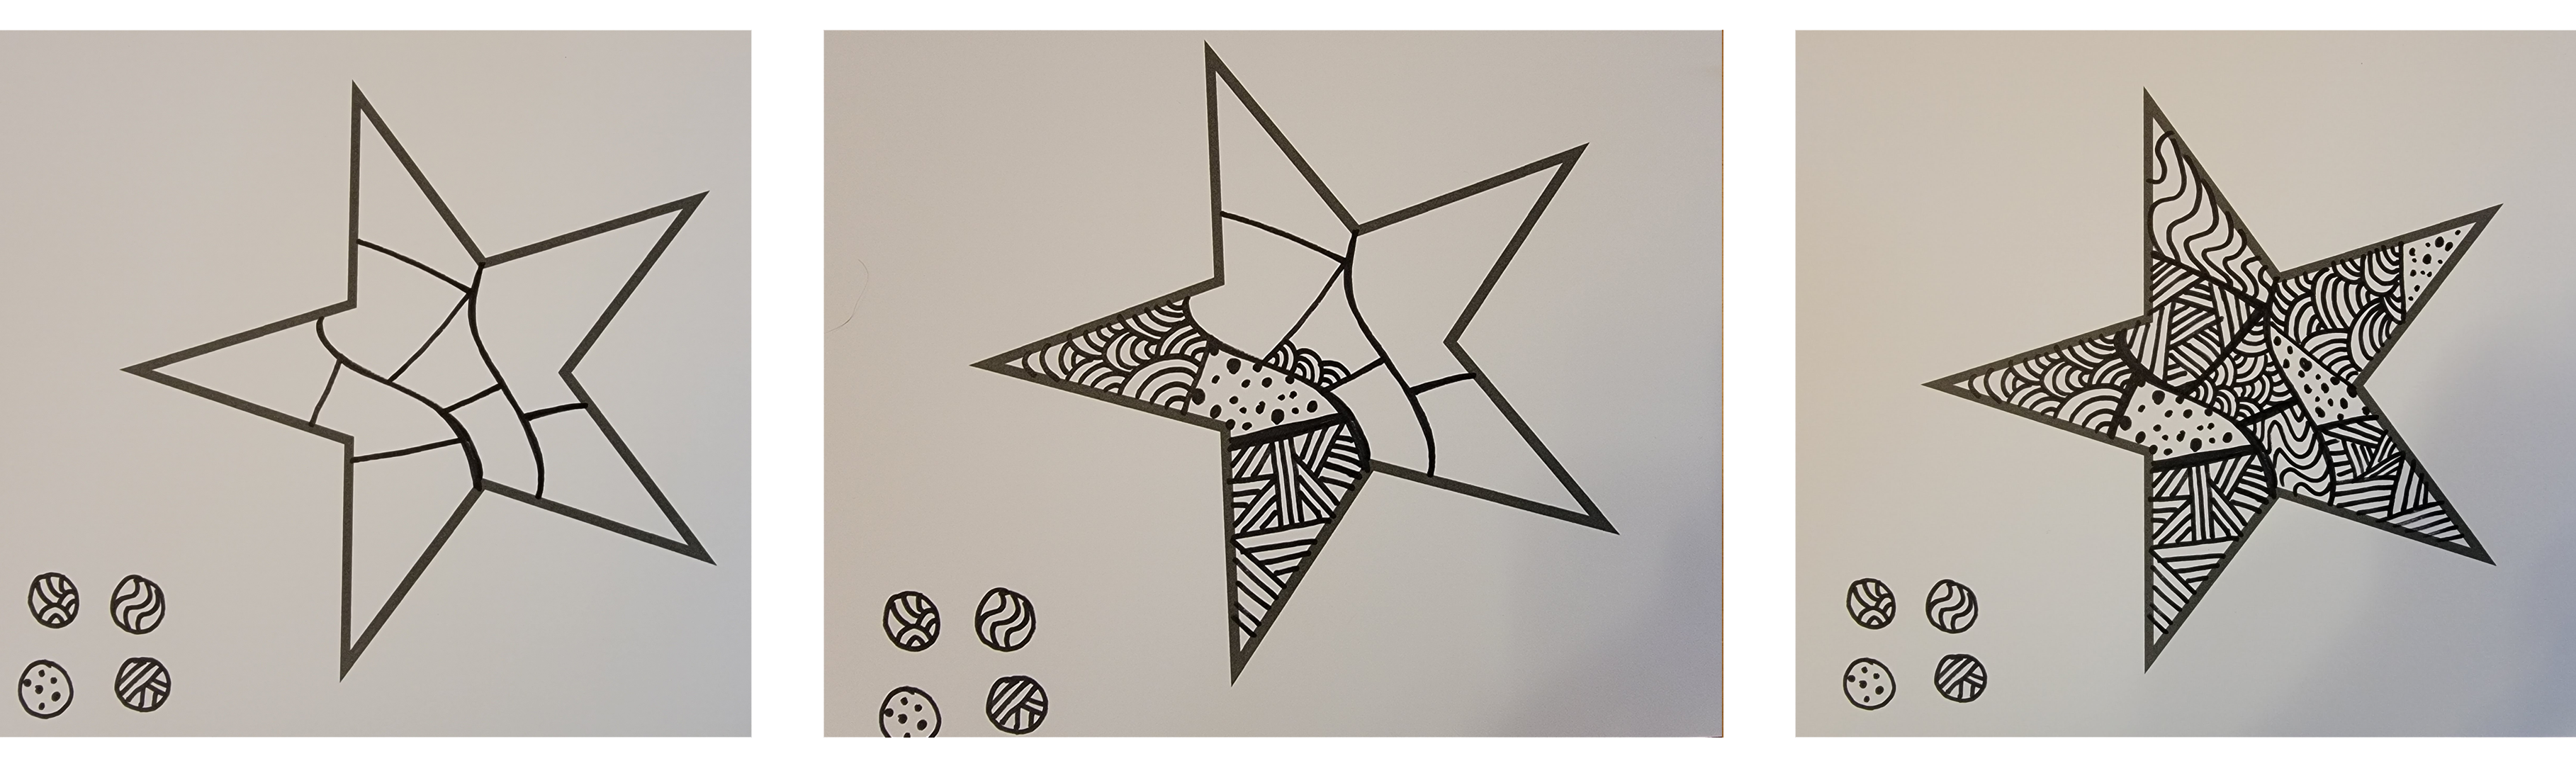 zen doodle stars